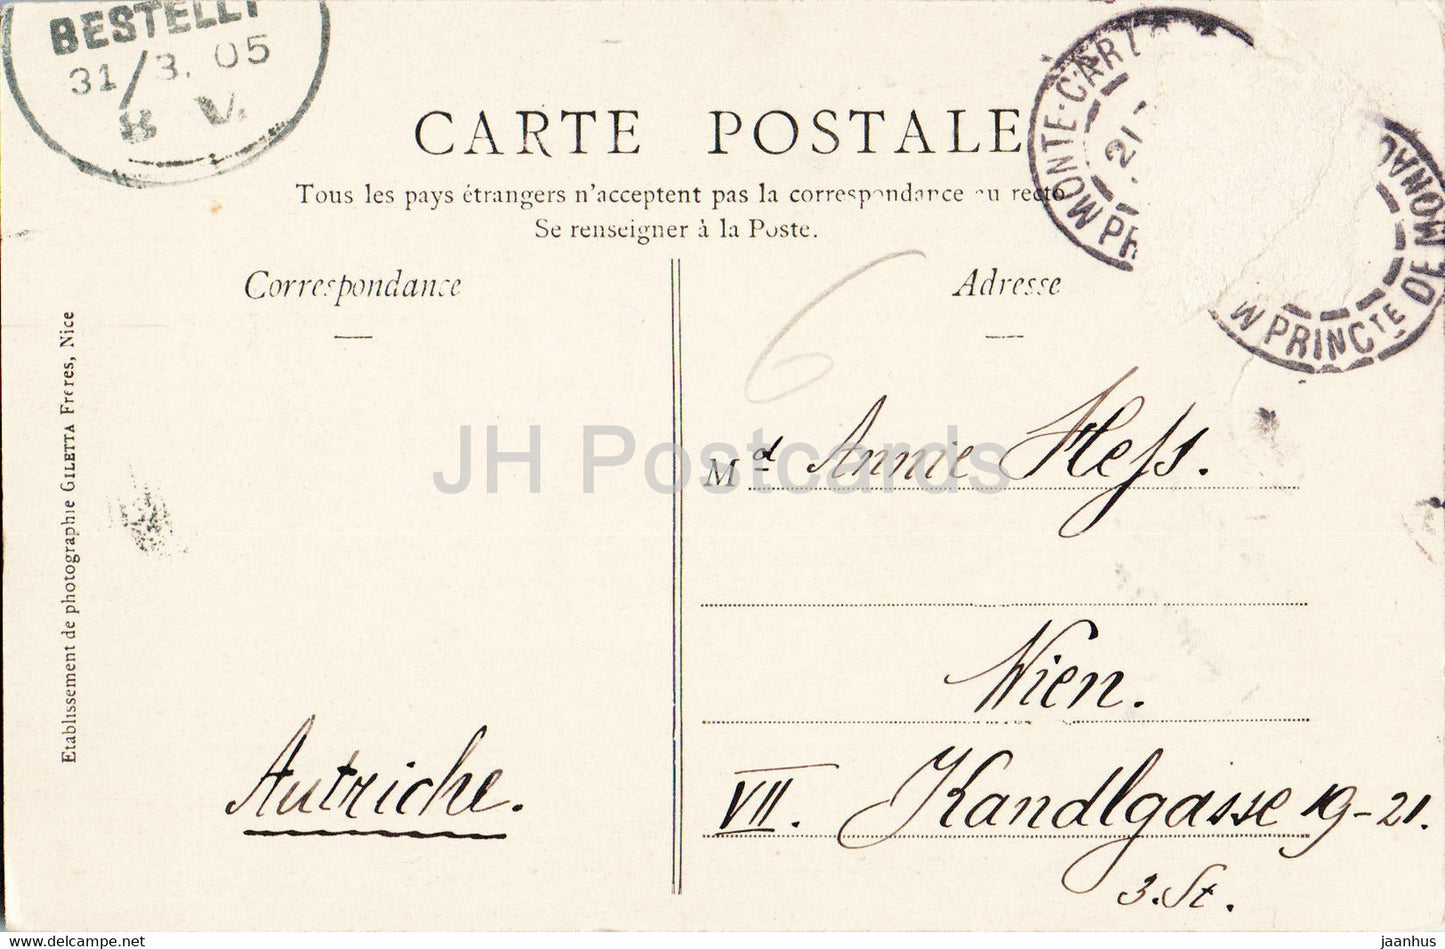 Monte Carlo - Théâtre et Terrasses - Collection Artistique - 708 - carte postale ancienne - 1905 - Monaco - occasion